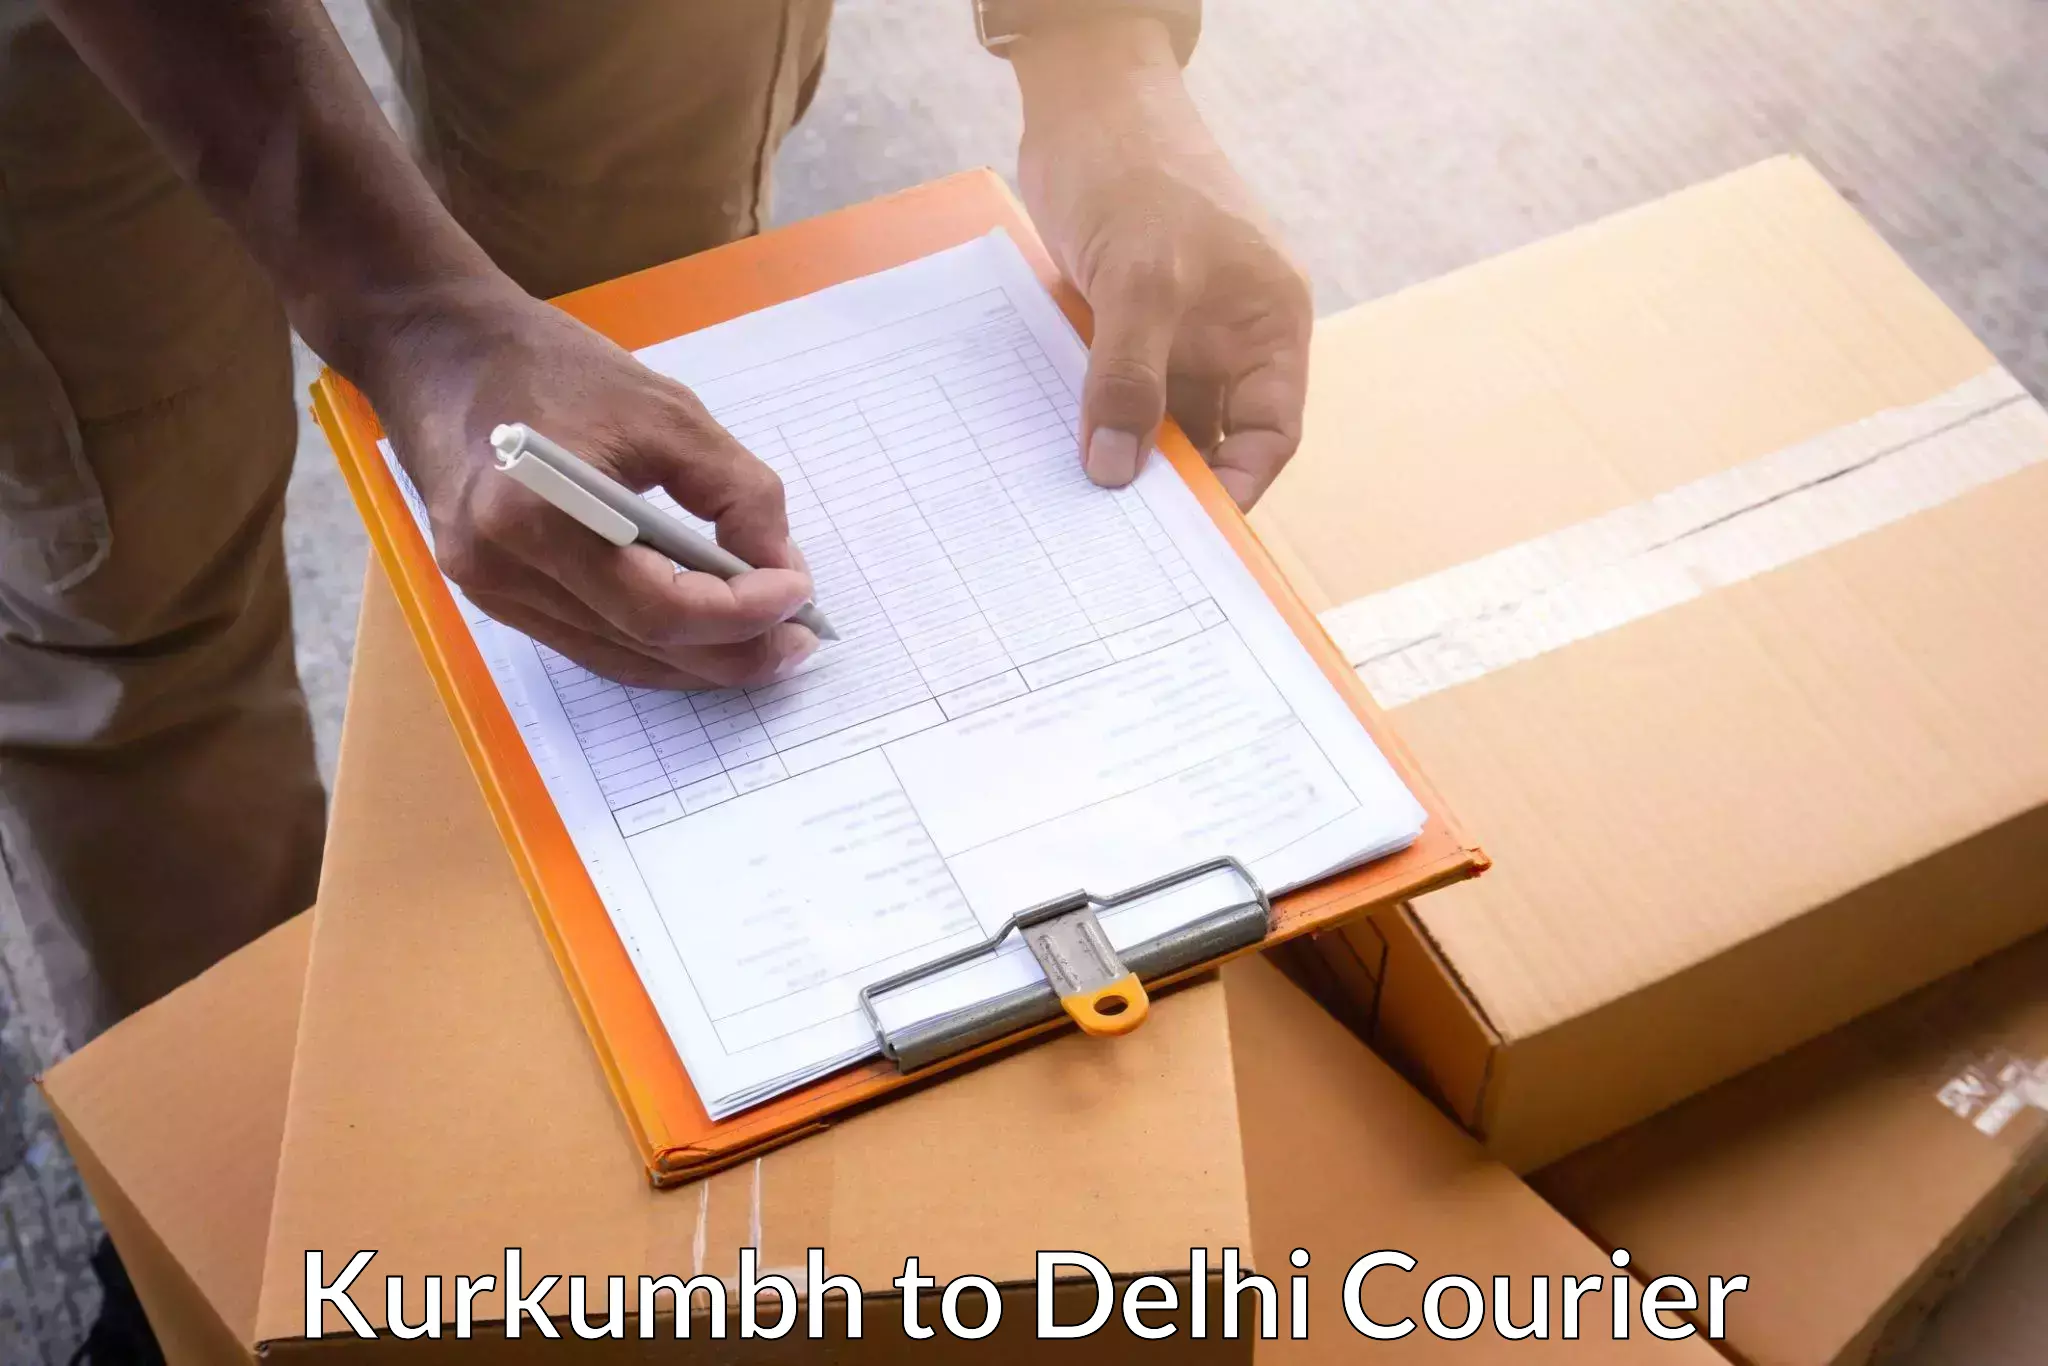 24/7 courier service Kurkumbh to Lodhi Road